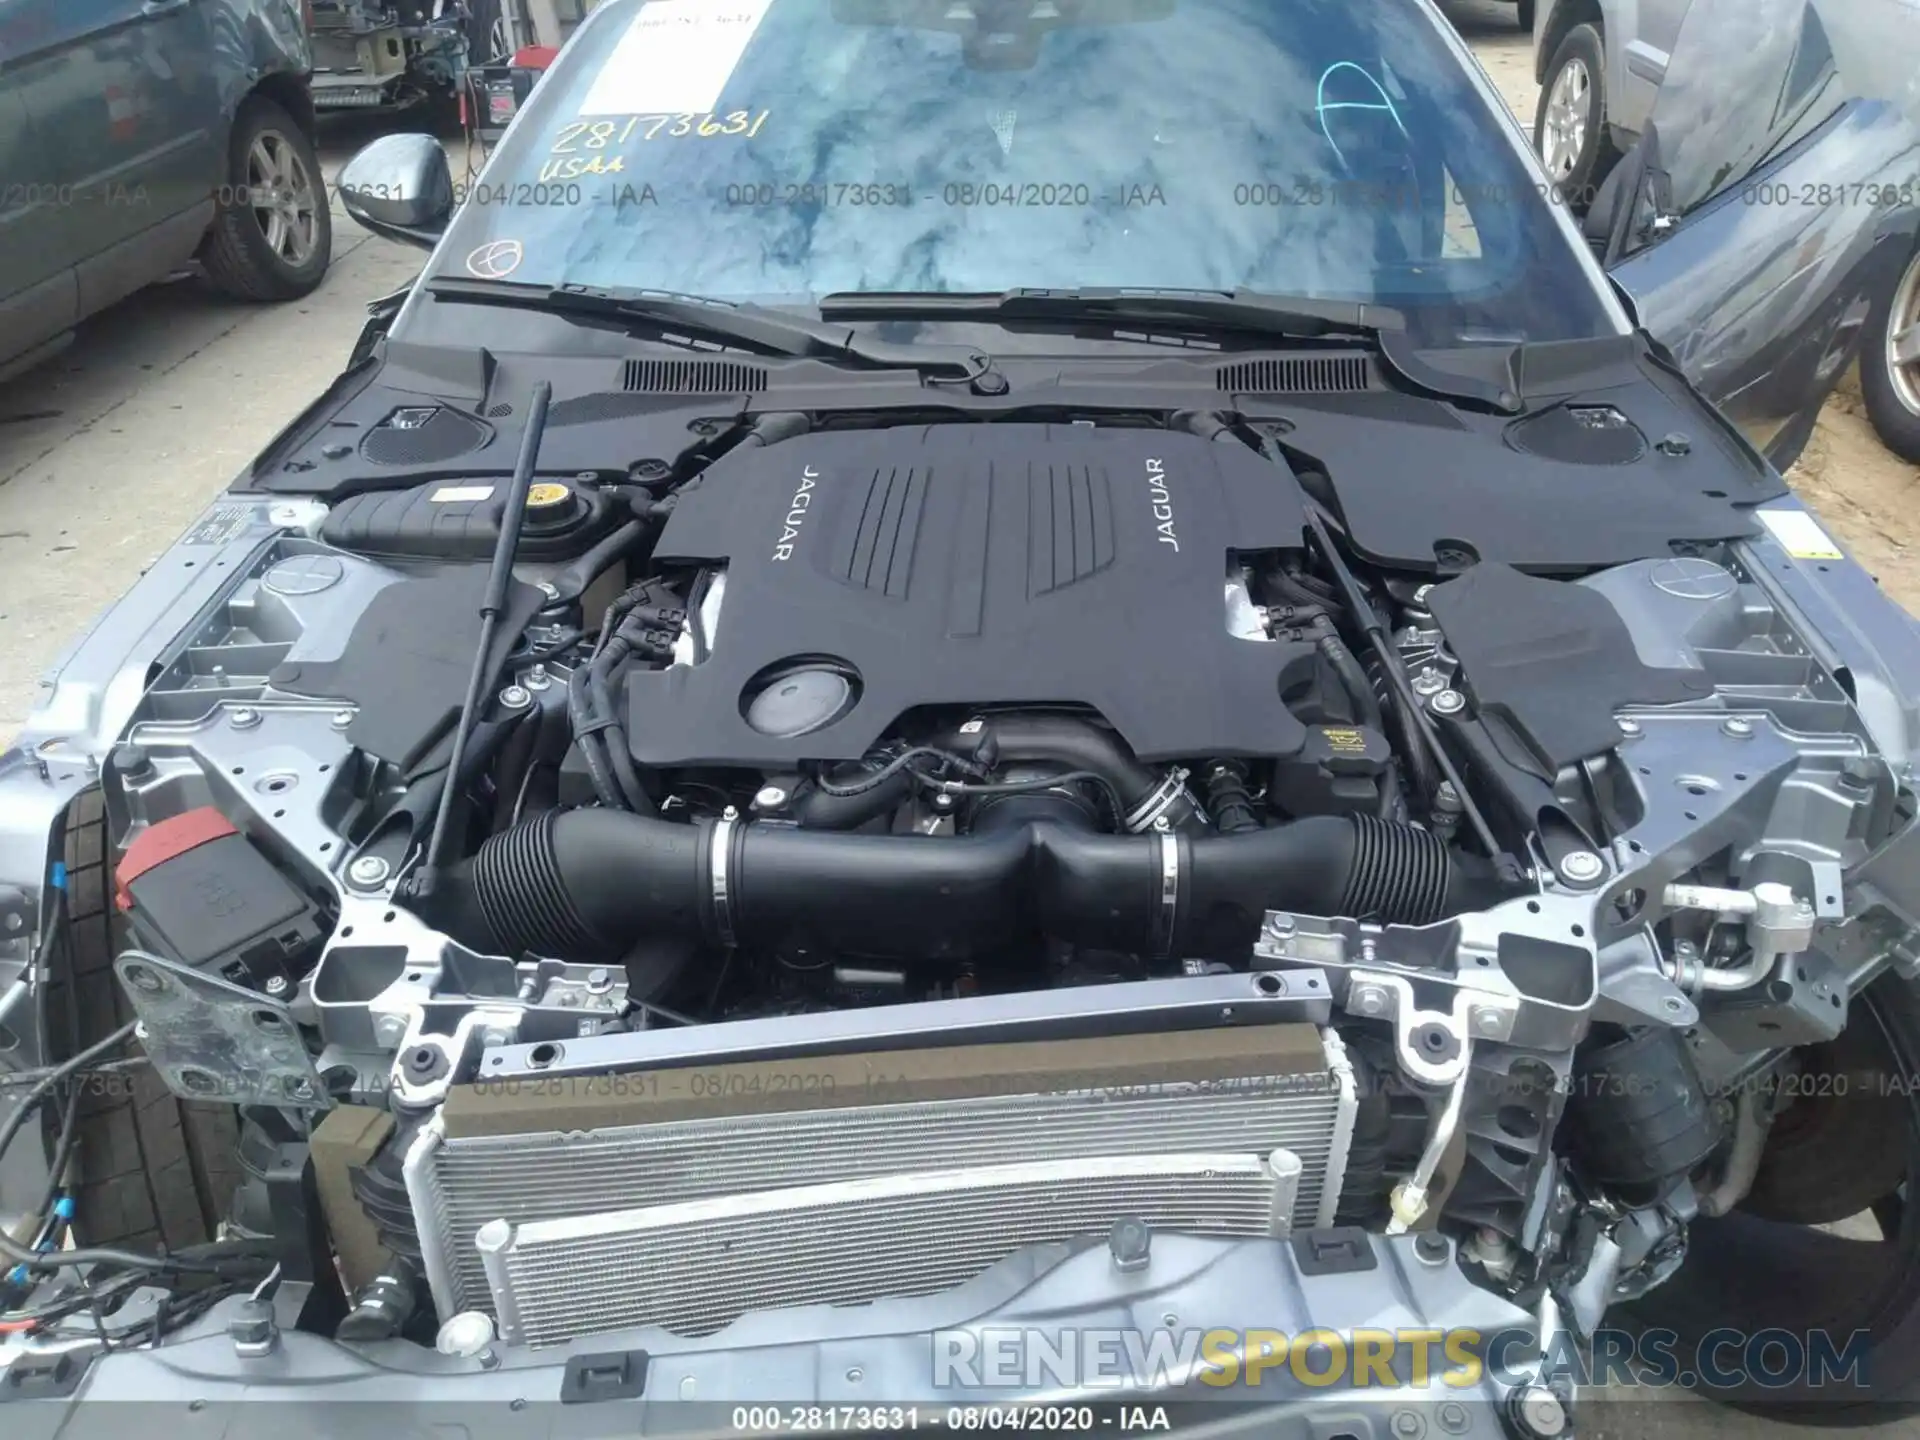 10 Photograph of a damaged car SAJD55FE8MCK70859 JAGUAR F-TYPE 2021